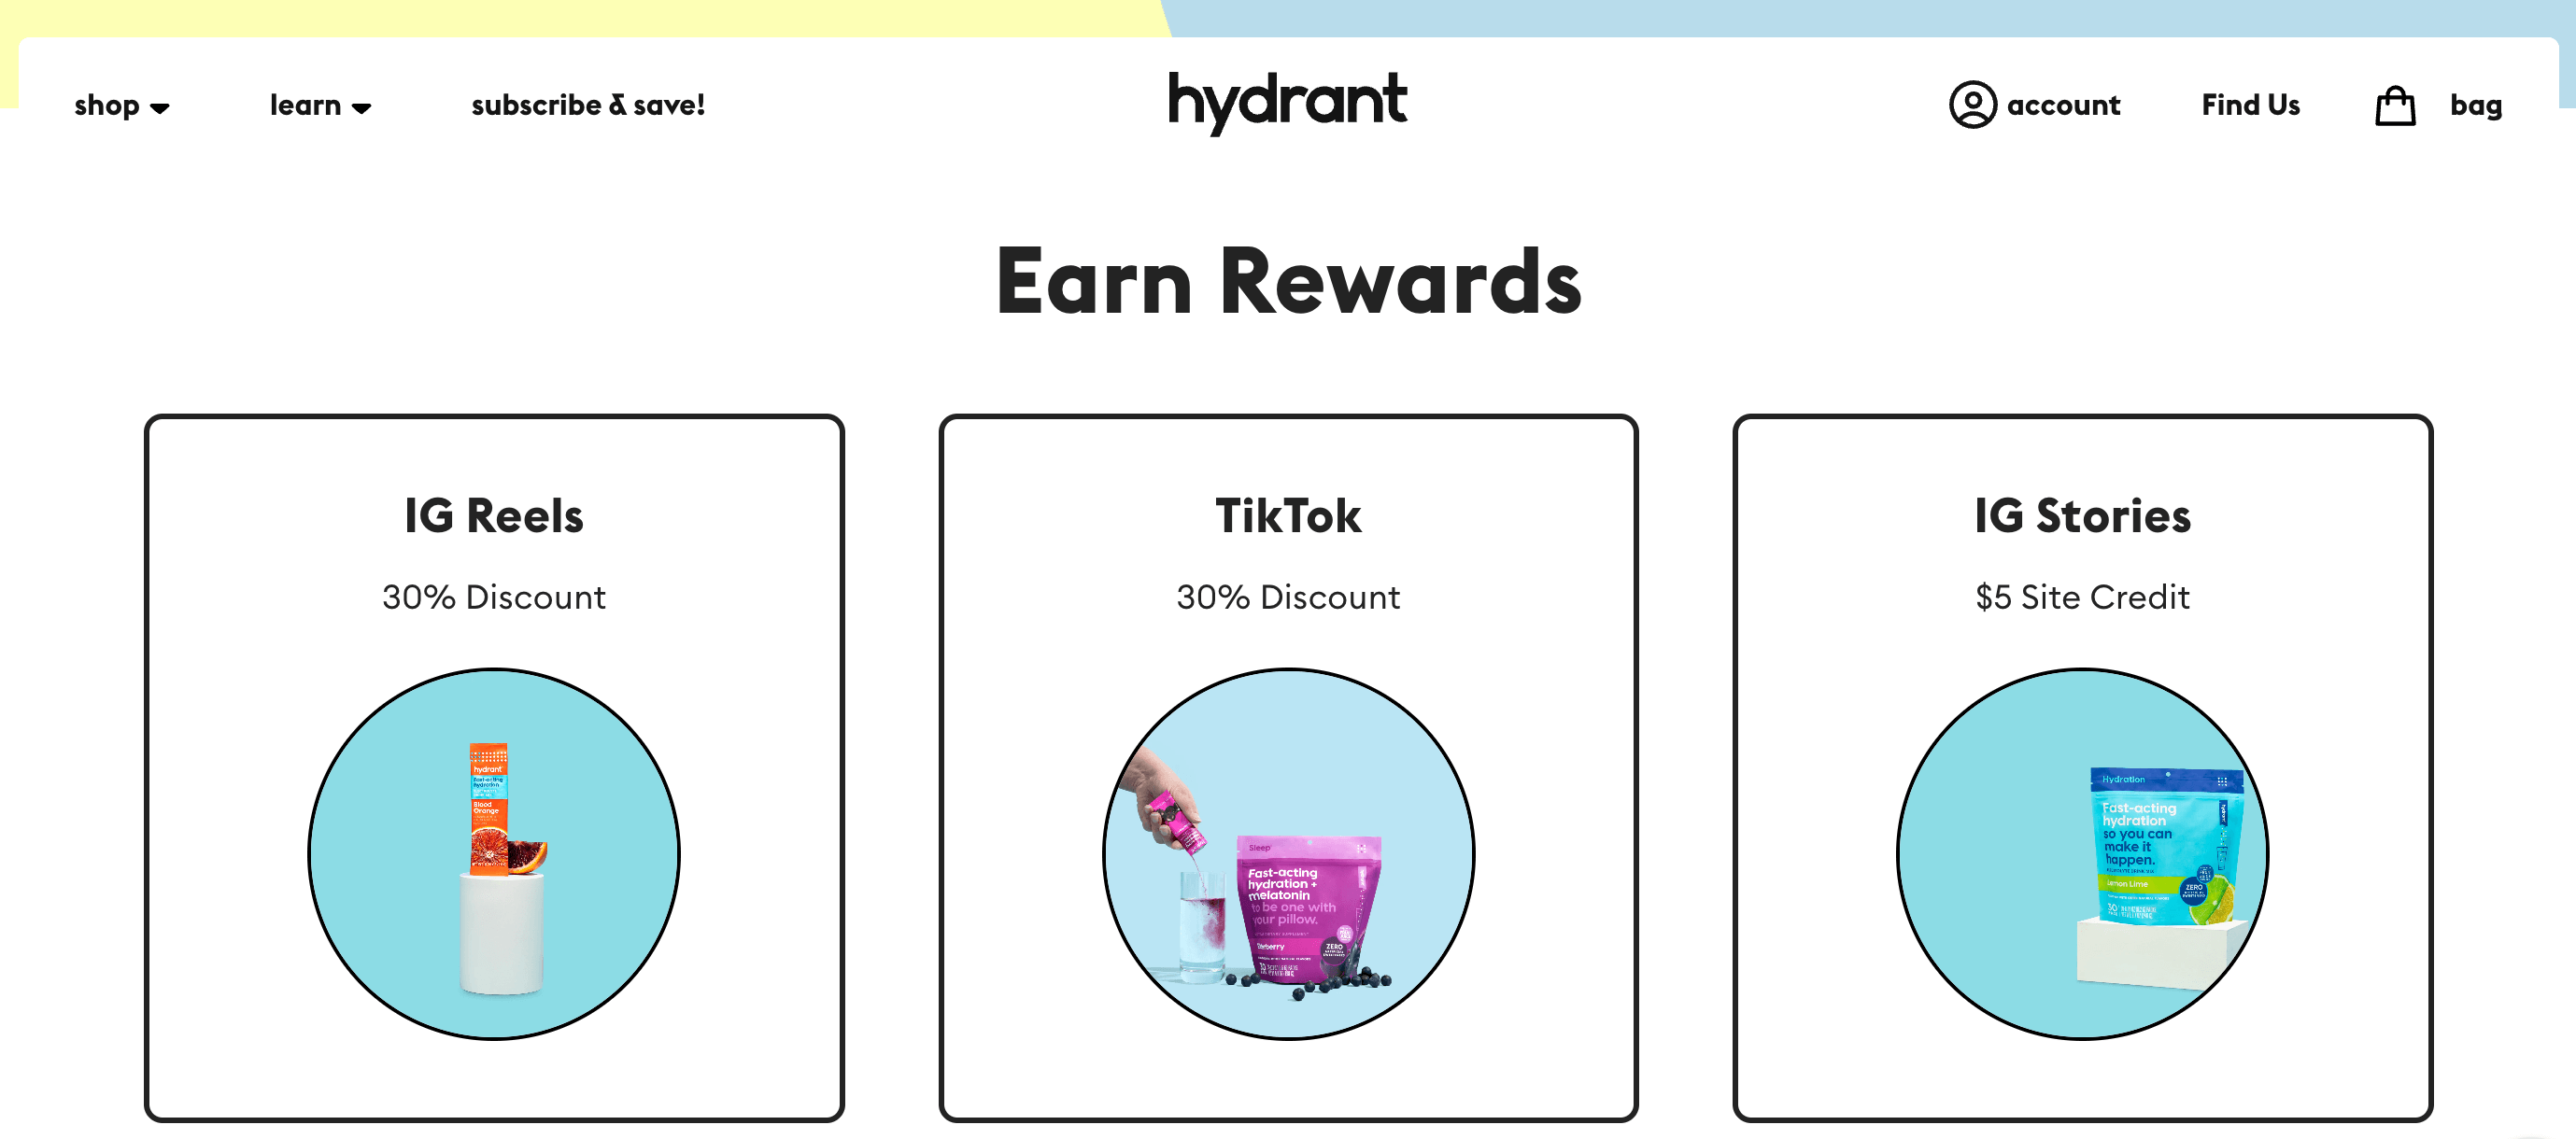 hydrant social club rewards page screenshot